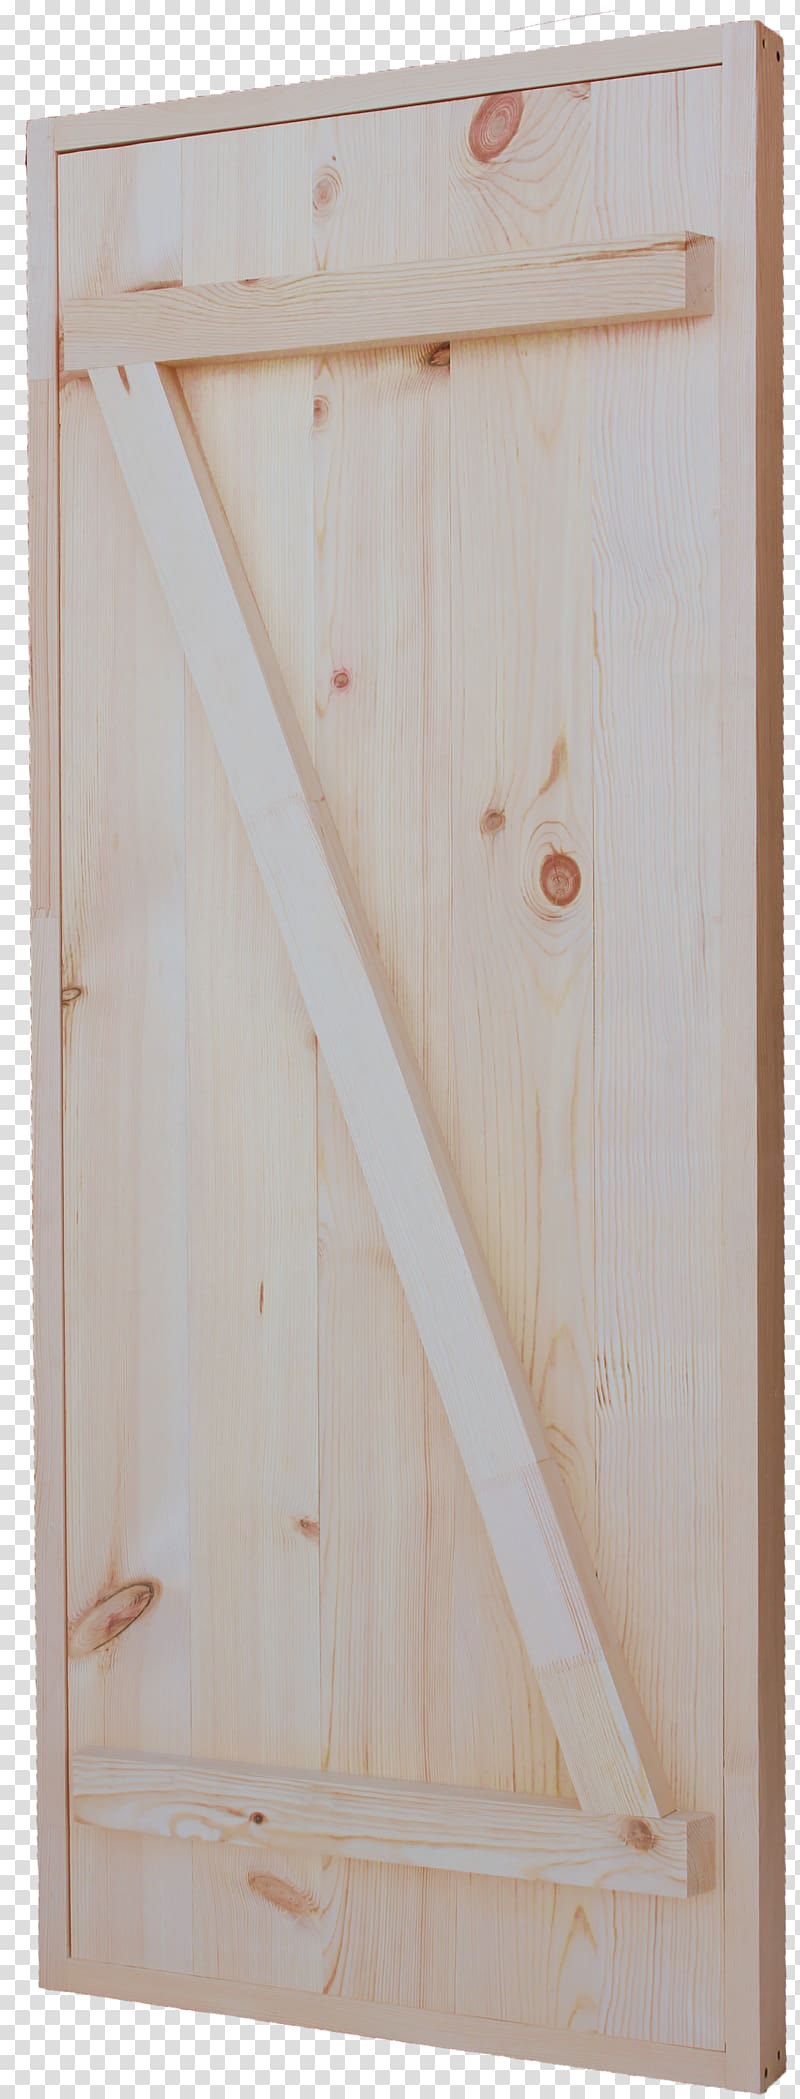 Banya Door Pine Magazin Pechi-Yekb Plywood, door transparent background PNG clipart